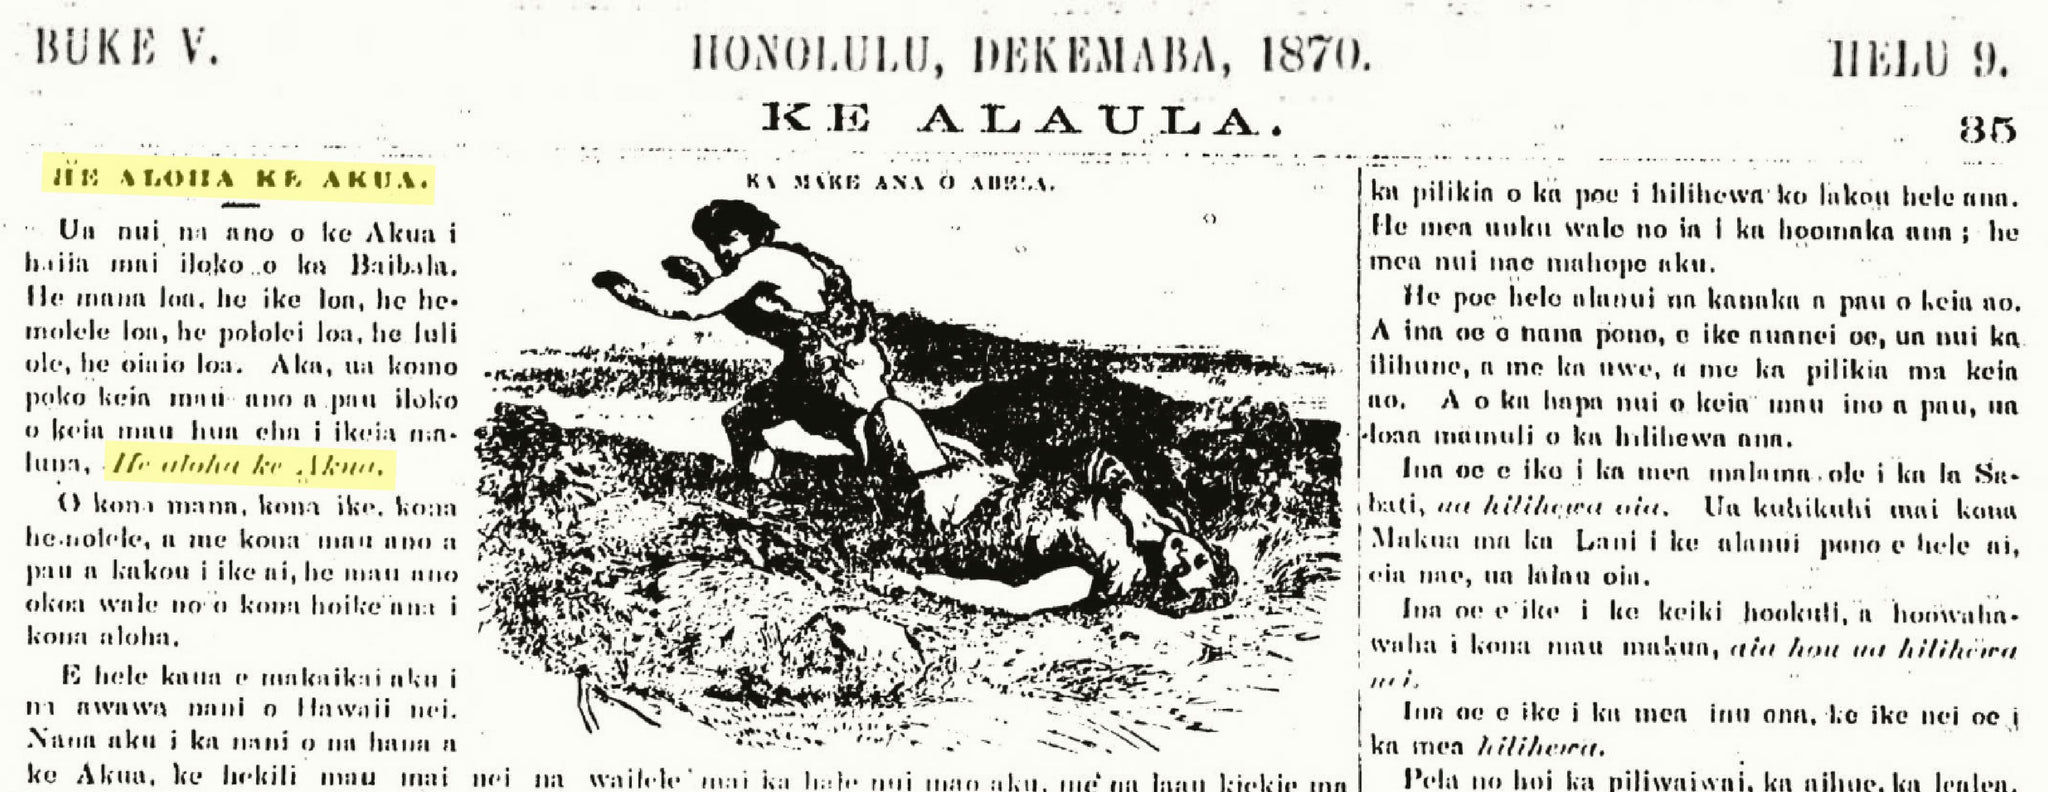 Aloha Ke Akua in an 1870 article from Ke Alaula